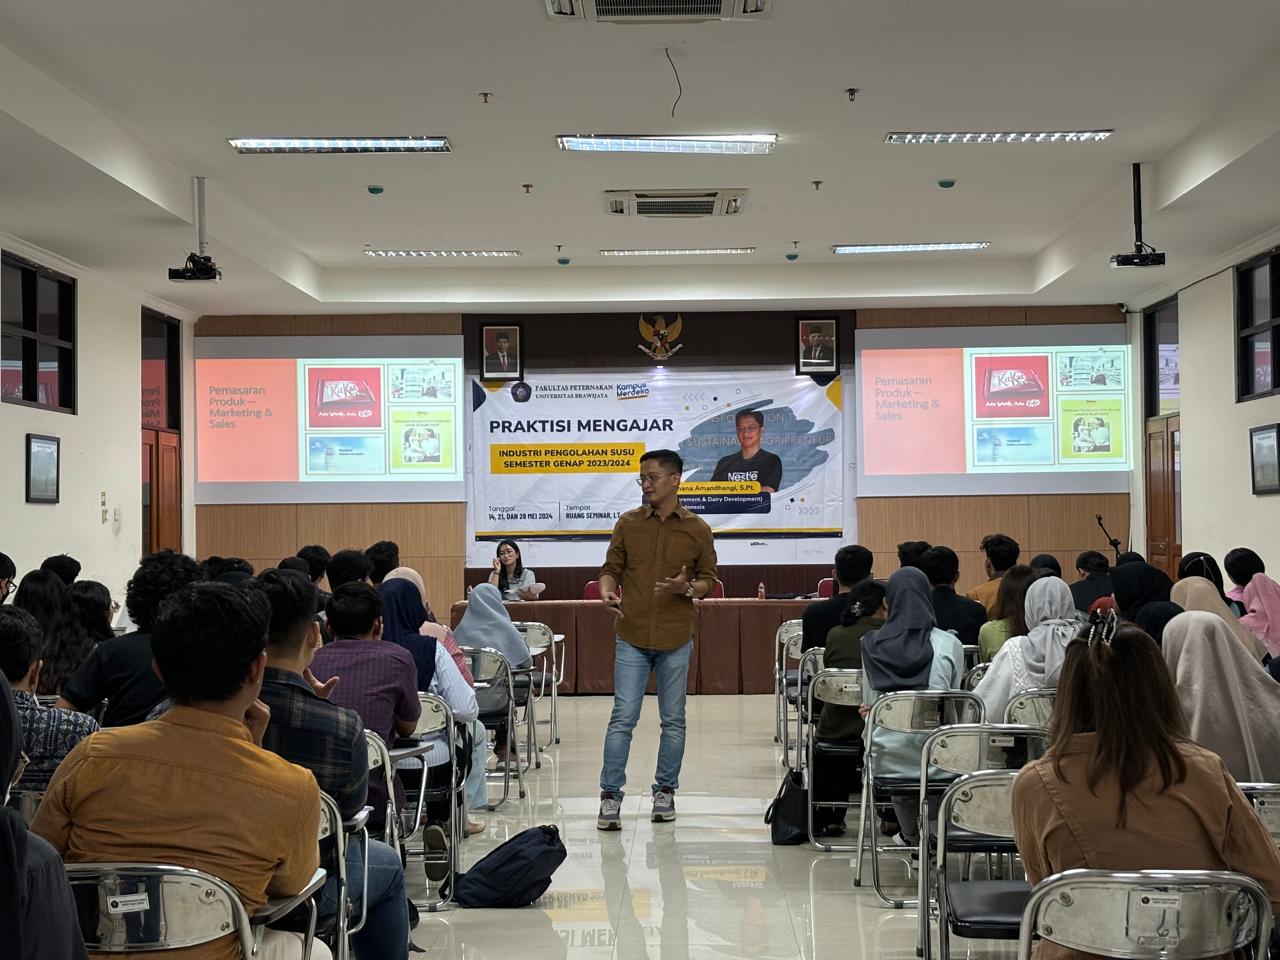 (Indonesia) Memperkaya Ilmu dan Wawasan Mahasiswa pada Mata Kuliah Industri Pengolahan Susu Kembali Melalui Program Praktisi Mengajar Semester Genap 2023/2024